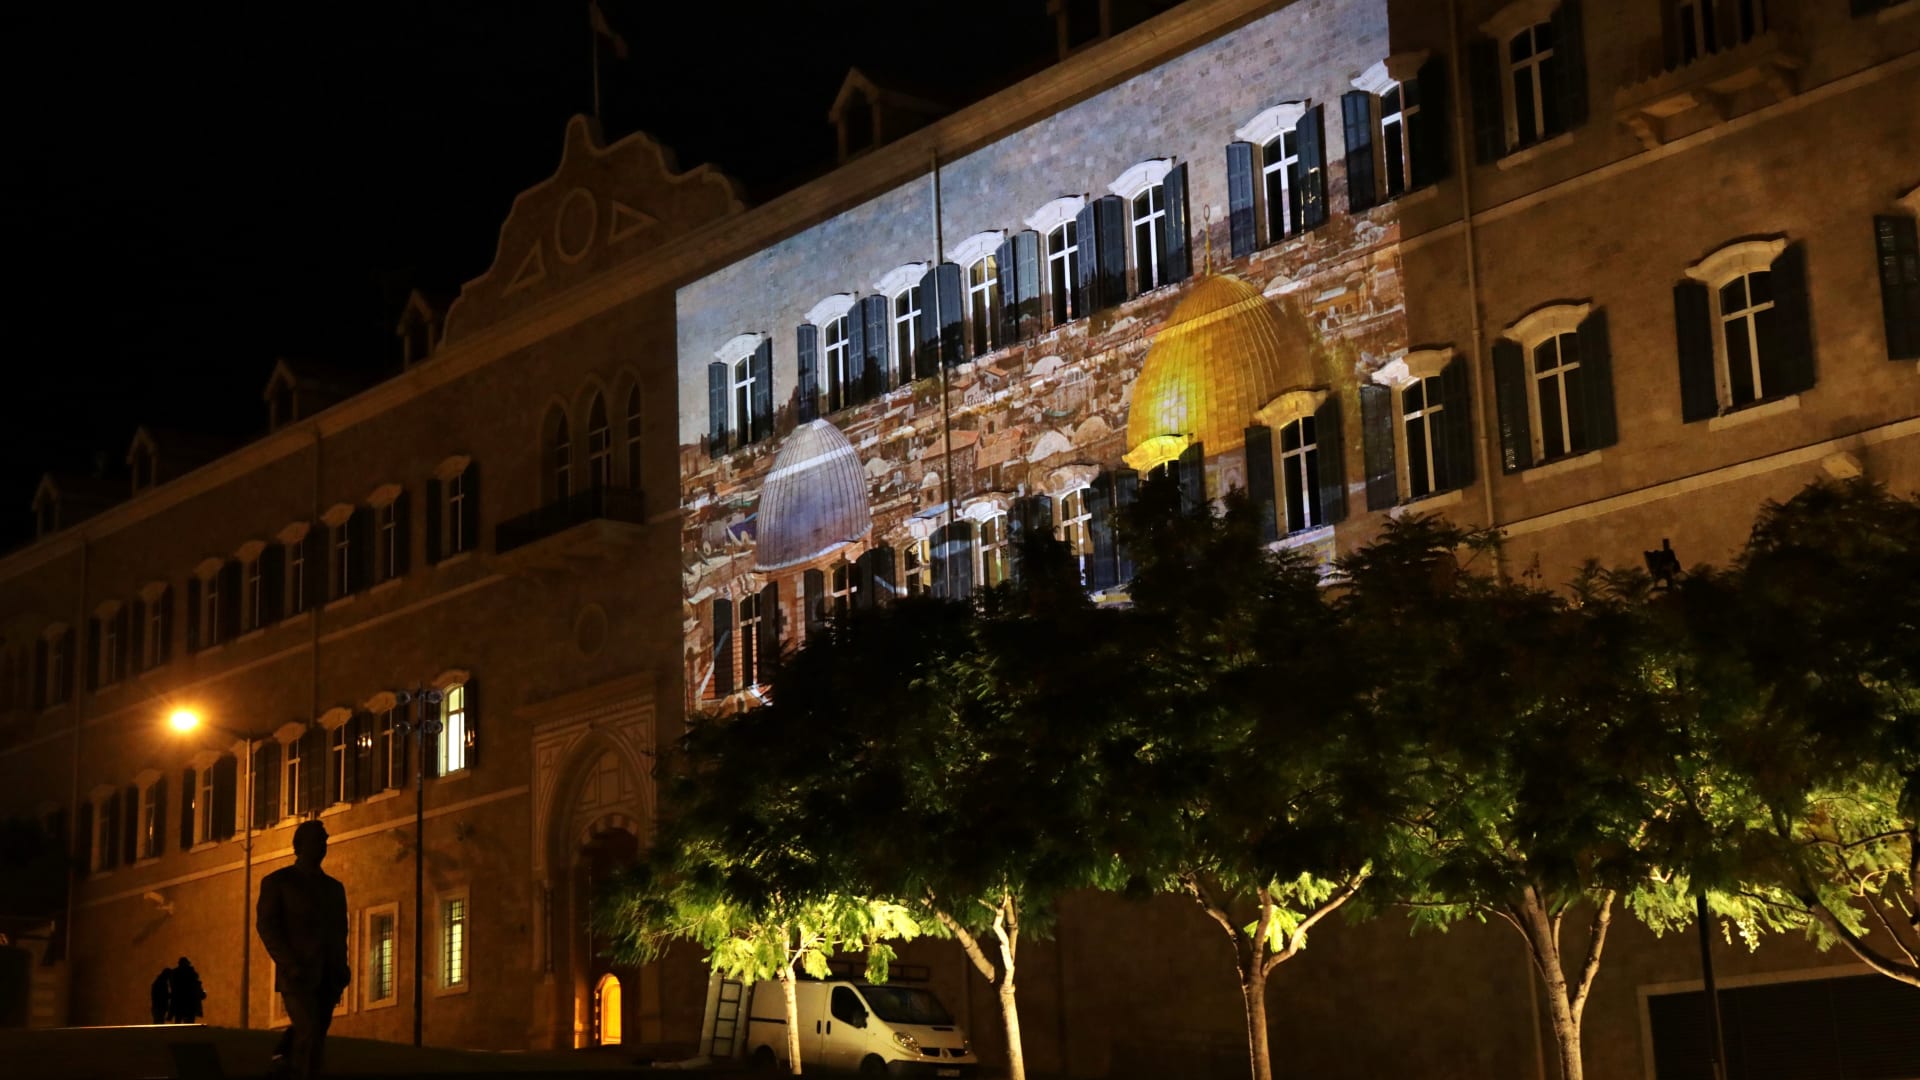 لبنان: المسجد الأقصى وكنيسة القيامة على جدران مقر الحكومة والأبنية